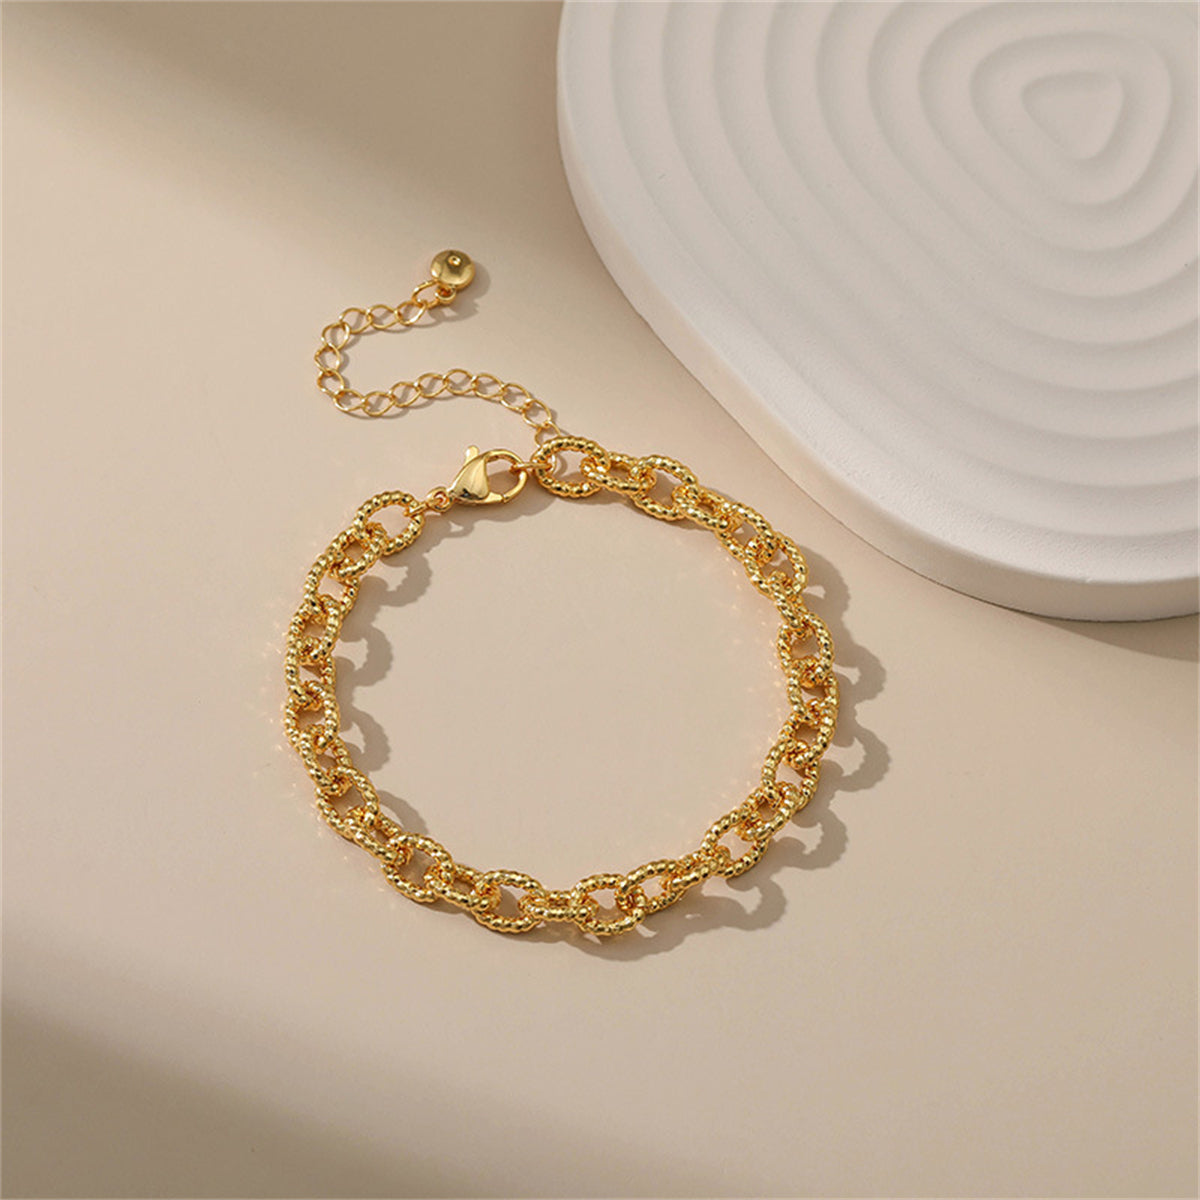 18K Gold-Plated Twine Adjustable Bracelet